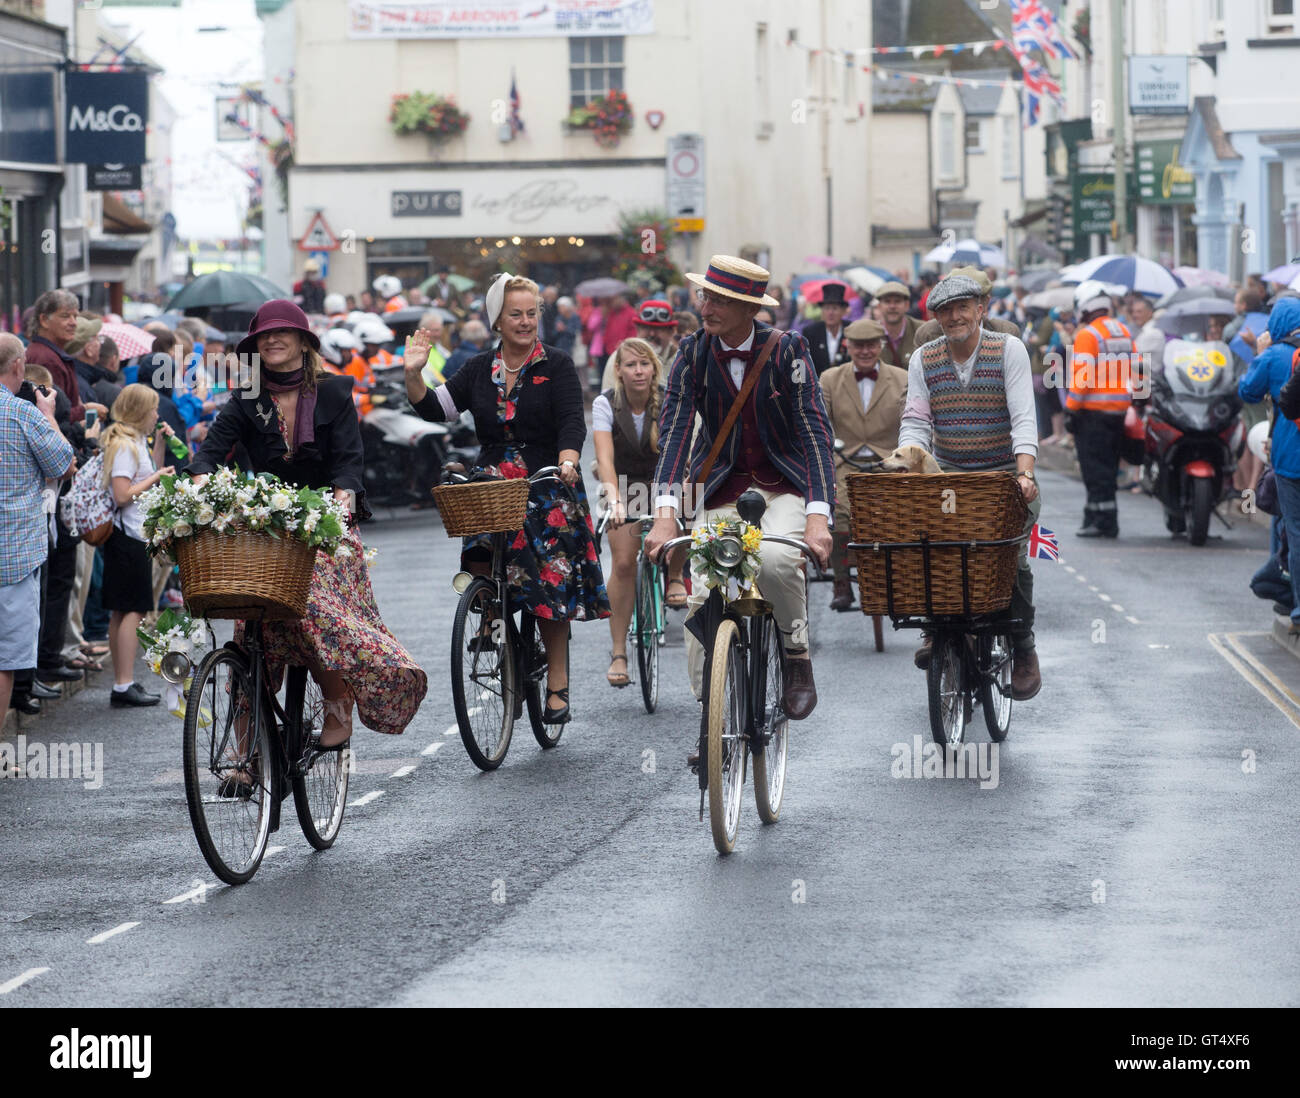 Devon, Cornwall, 9 septembre, 16 membres du vintage cyclisme Velo club 'vintage' prendre part à un lead-out ride du Tour de Grande-Bretagne, dans la phase 6 commence à Sidmouth ce matin (vendredi). Crédit photo : Tony Charnock/Alamy Live News Banque D'Images